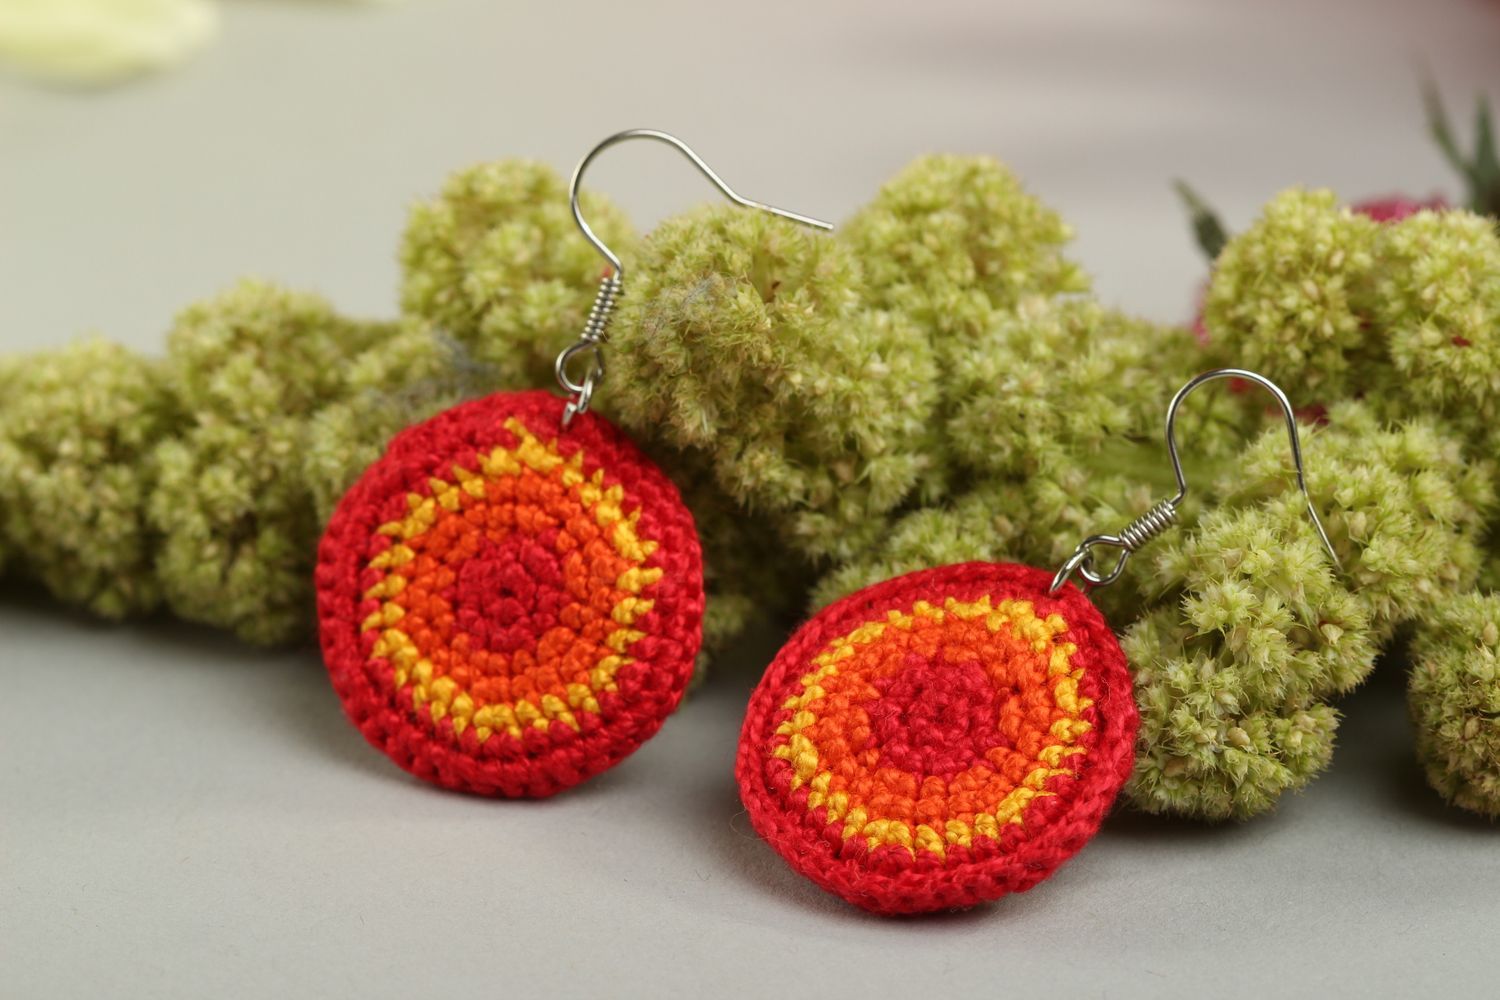 Handmade earrings designer accessory crocheted earrings unusual gift for her photo 1